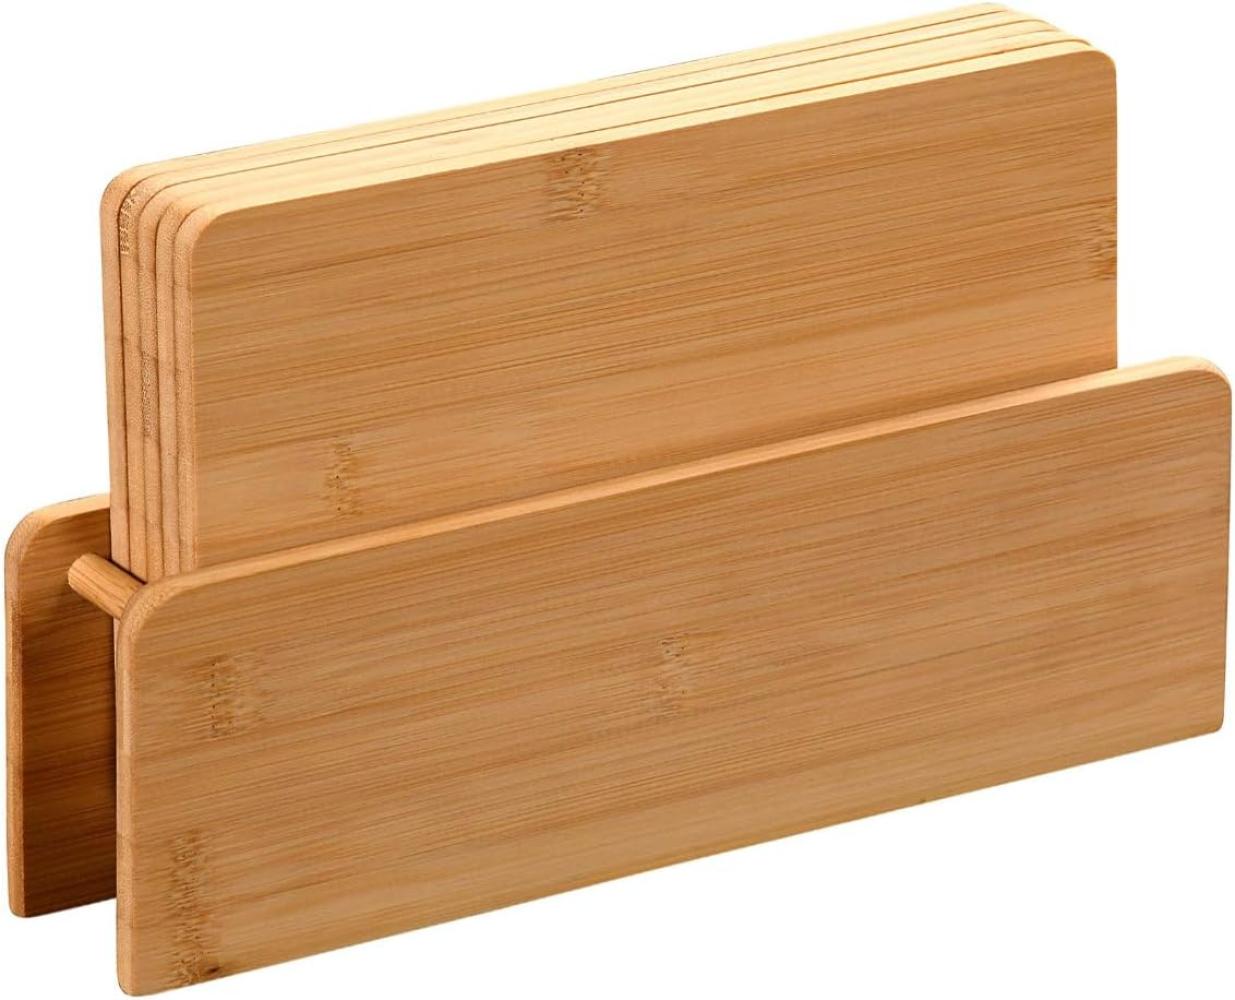 KESPER 58376 Brettchenständer mit 5 Brettchen aus Bambus / Frühstücksbrettchen Bild 1